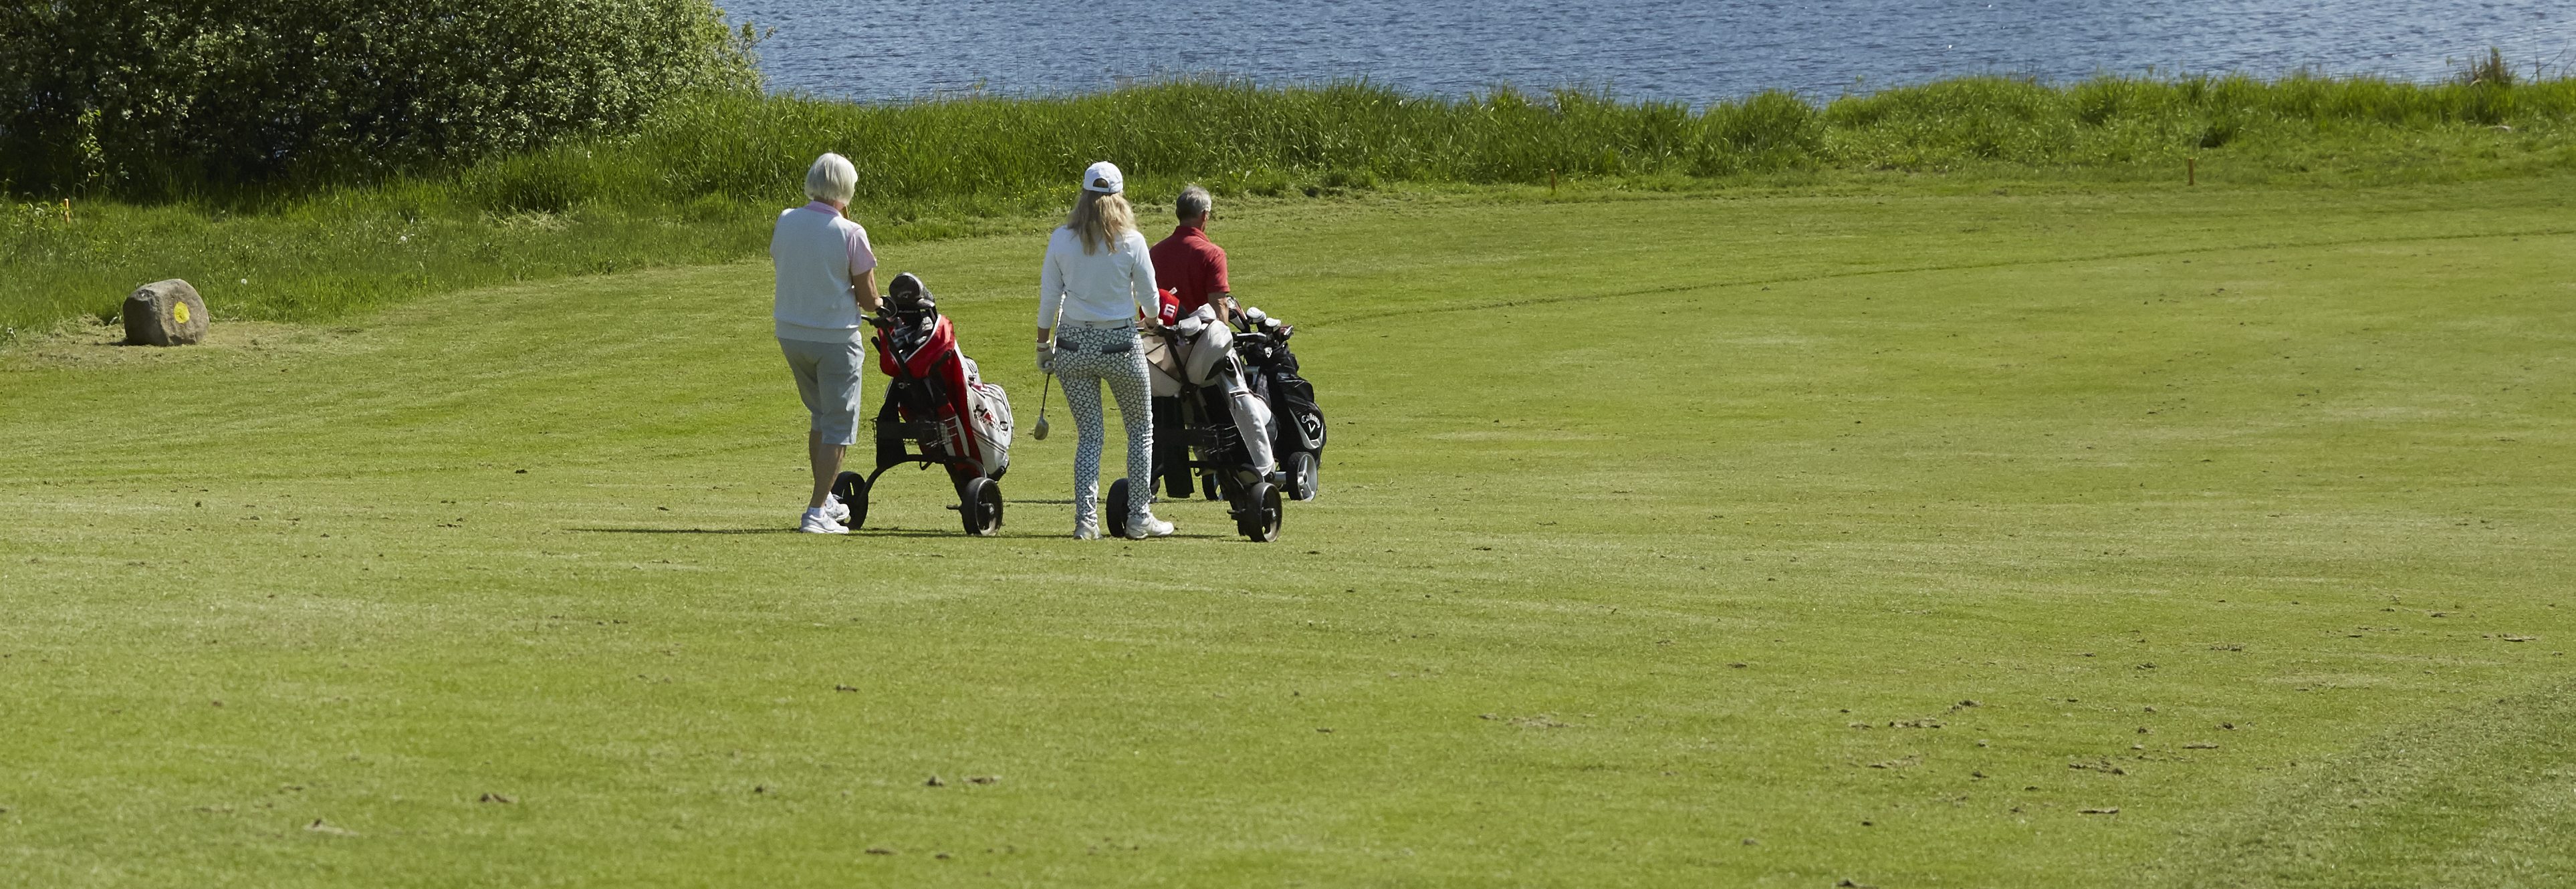 Ledig ledsage til stede Klubbens ansatte | Aarhus Golf Club